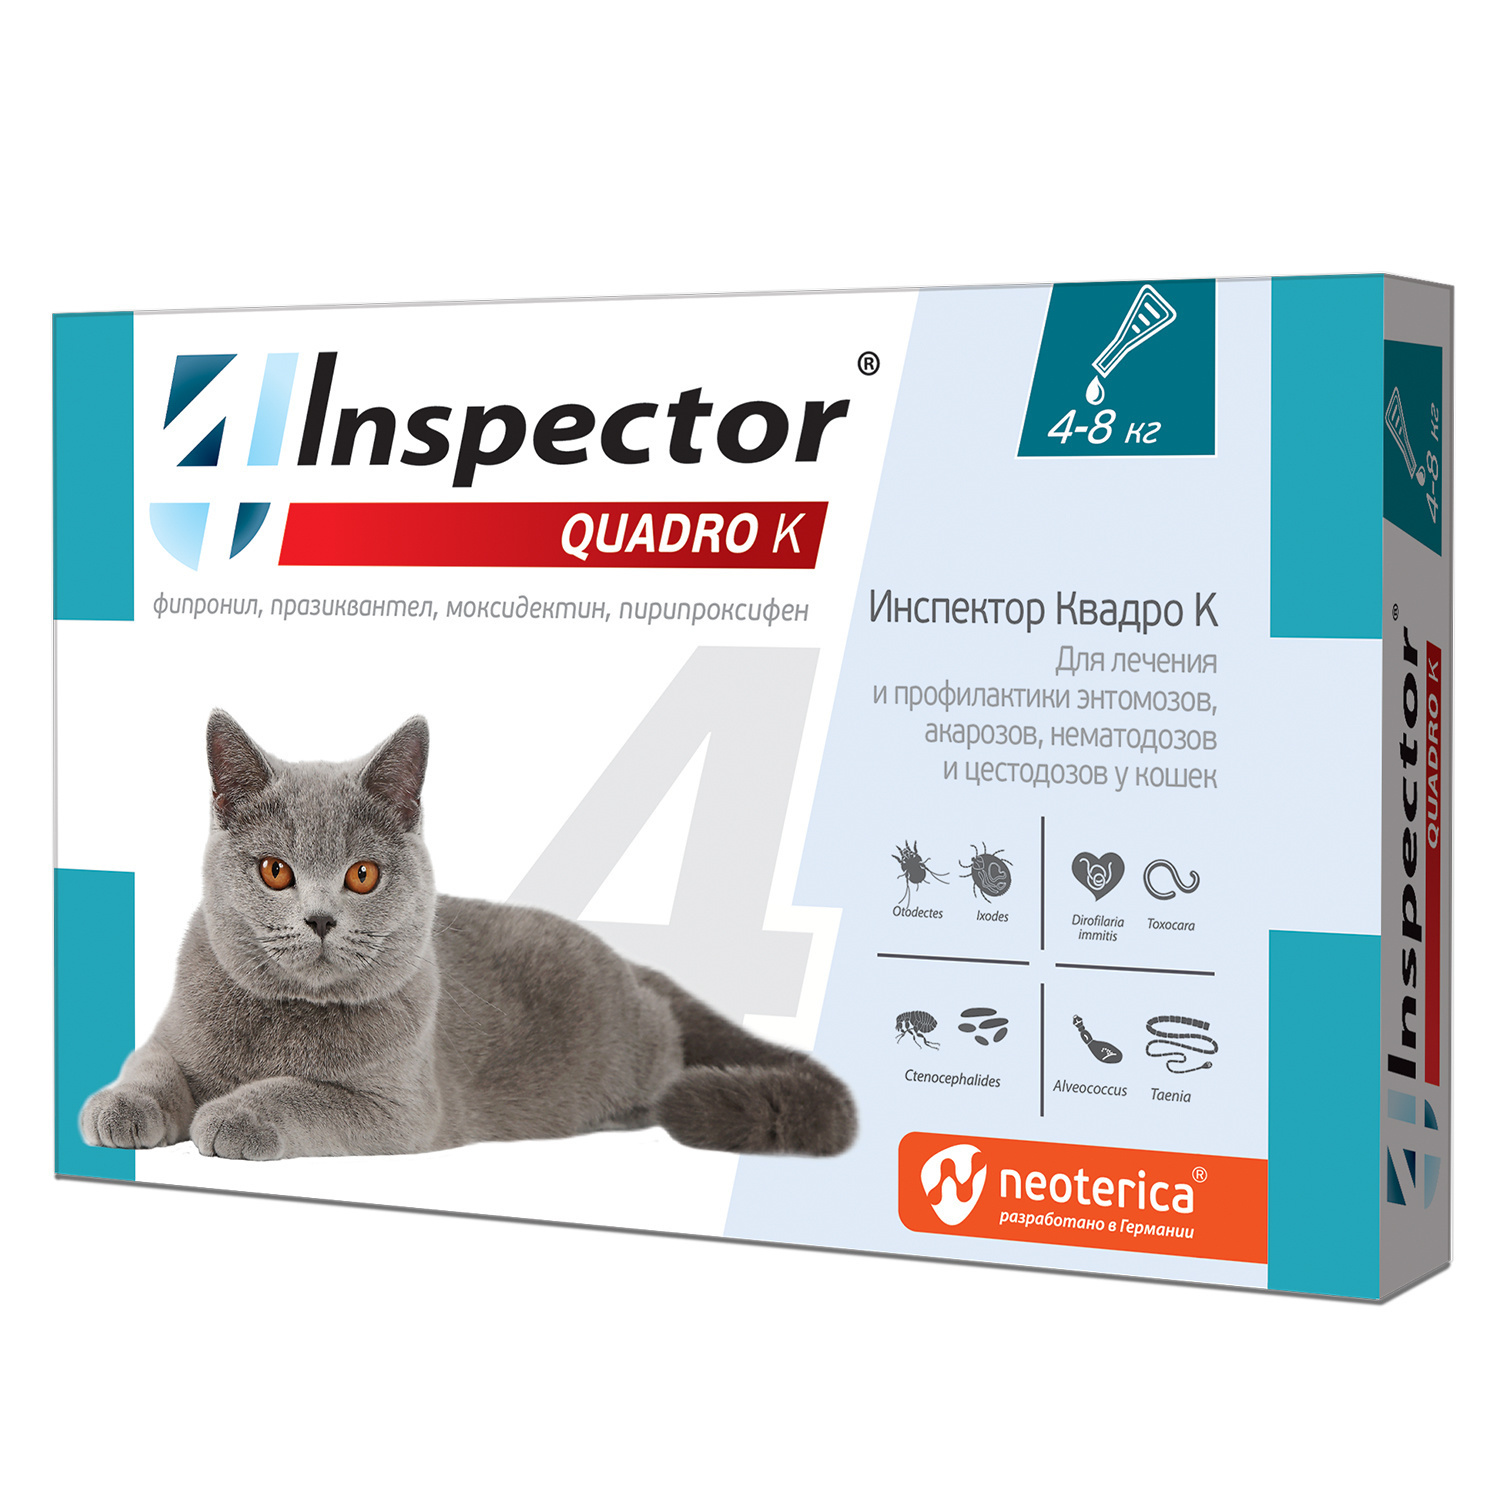 Inspector Inspector quadro капли на холку для кошек 4-8 кг, от глистов, насекомых, клещей (180 г) inspector inspector капли на холку для кошек 4 8кг 3 шт 25 г